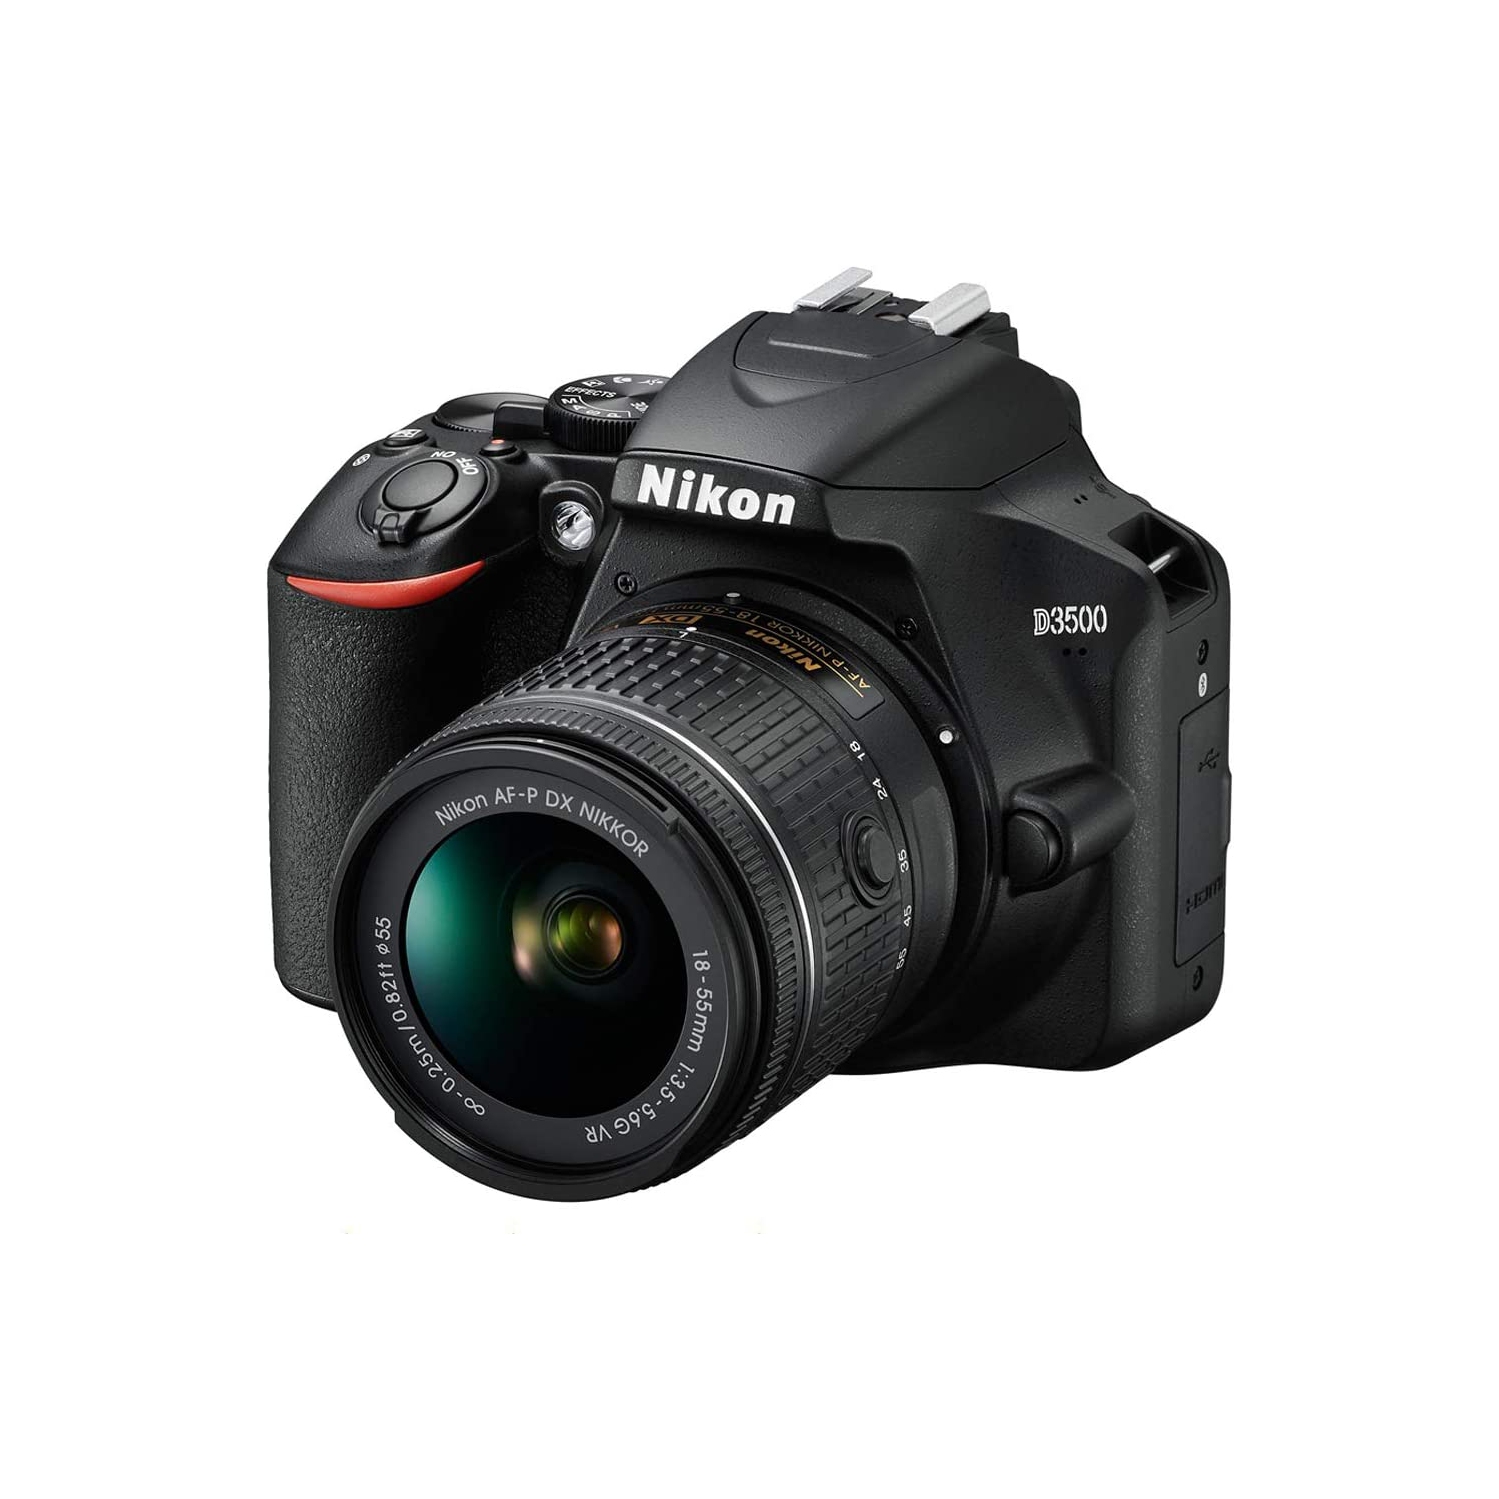 Nikon D3500 24.2MP DX-Format DSLR Digital Camera with 18-55mm Lens - (Renewed)